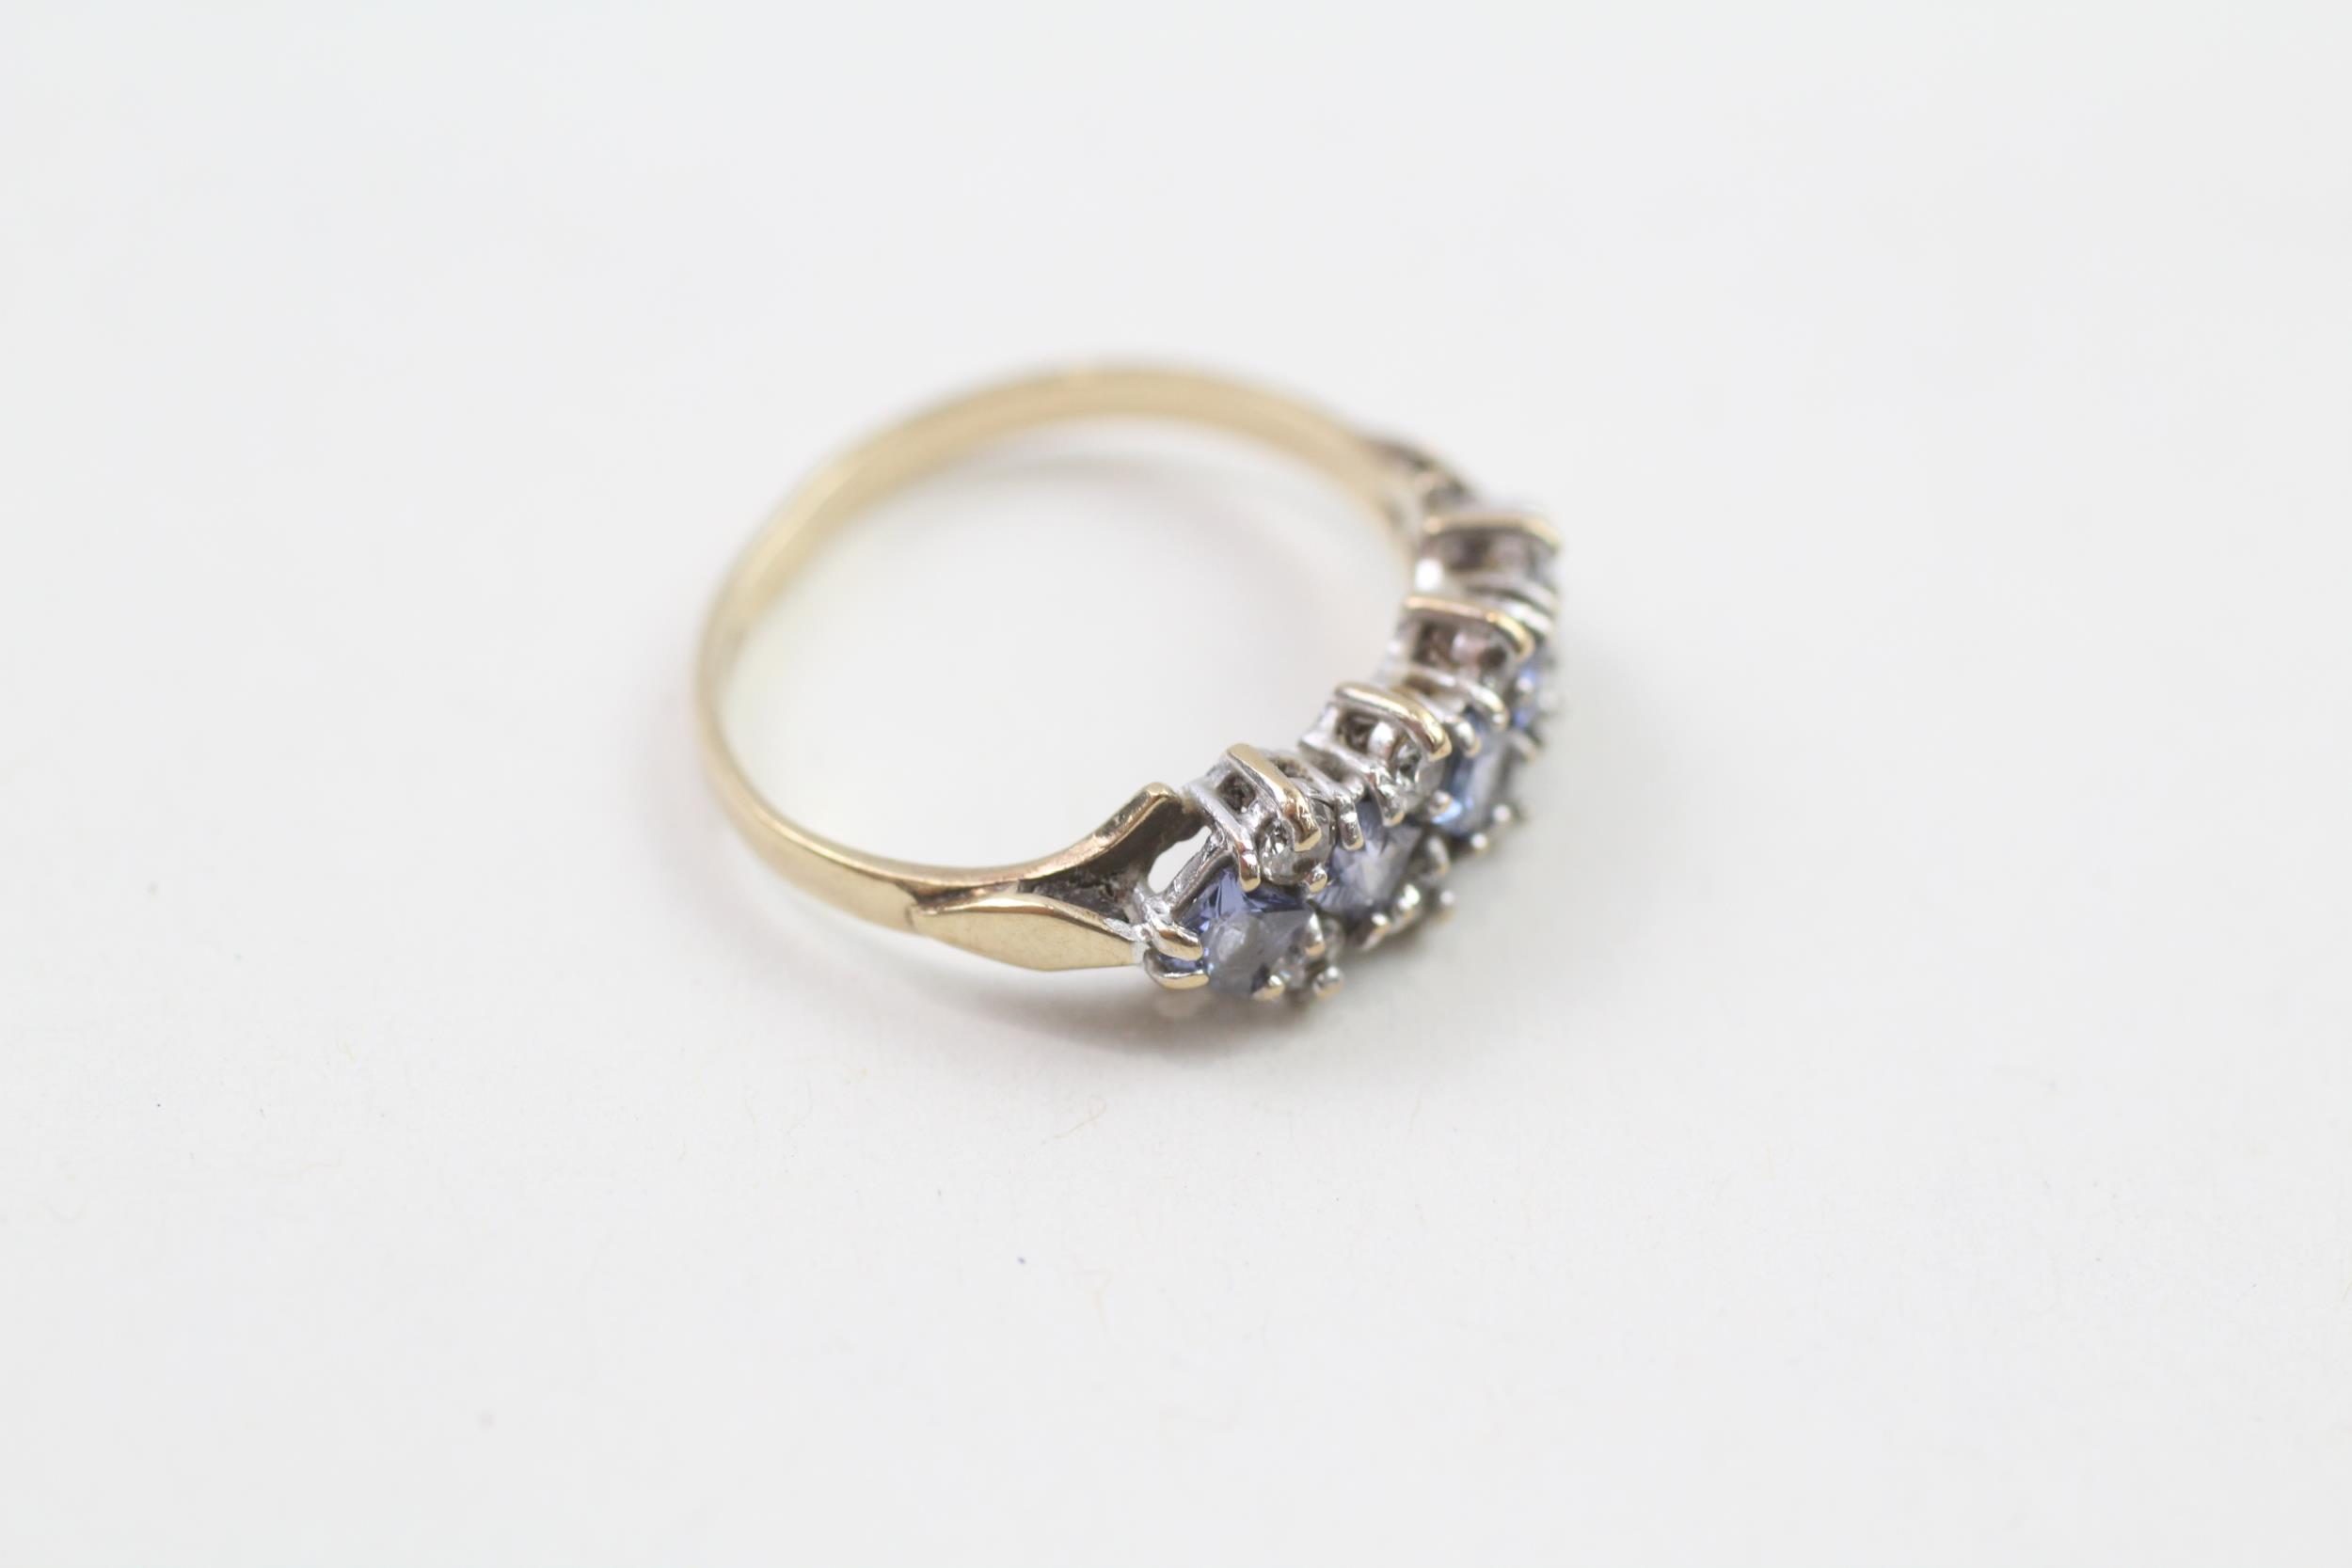 9ct gold white & blue gemstone dress ring Size I 1.6 g - Image 3 of 4